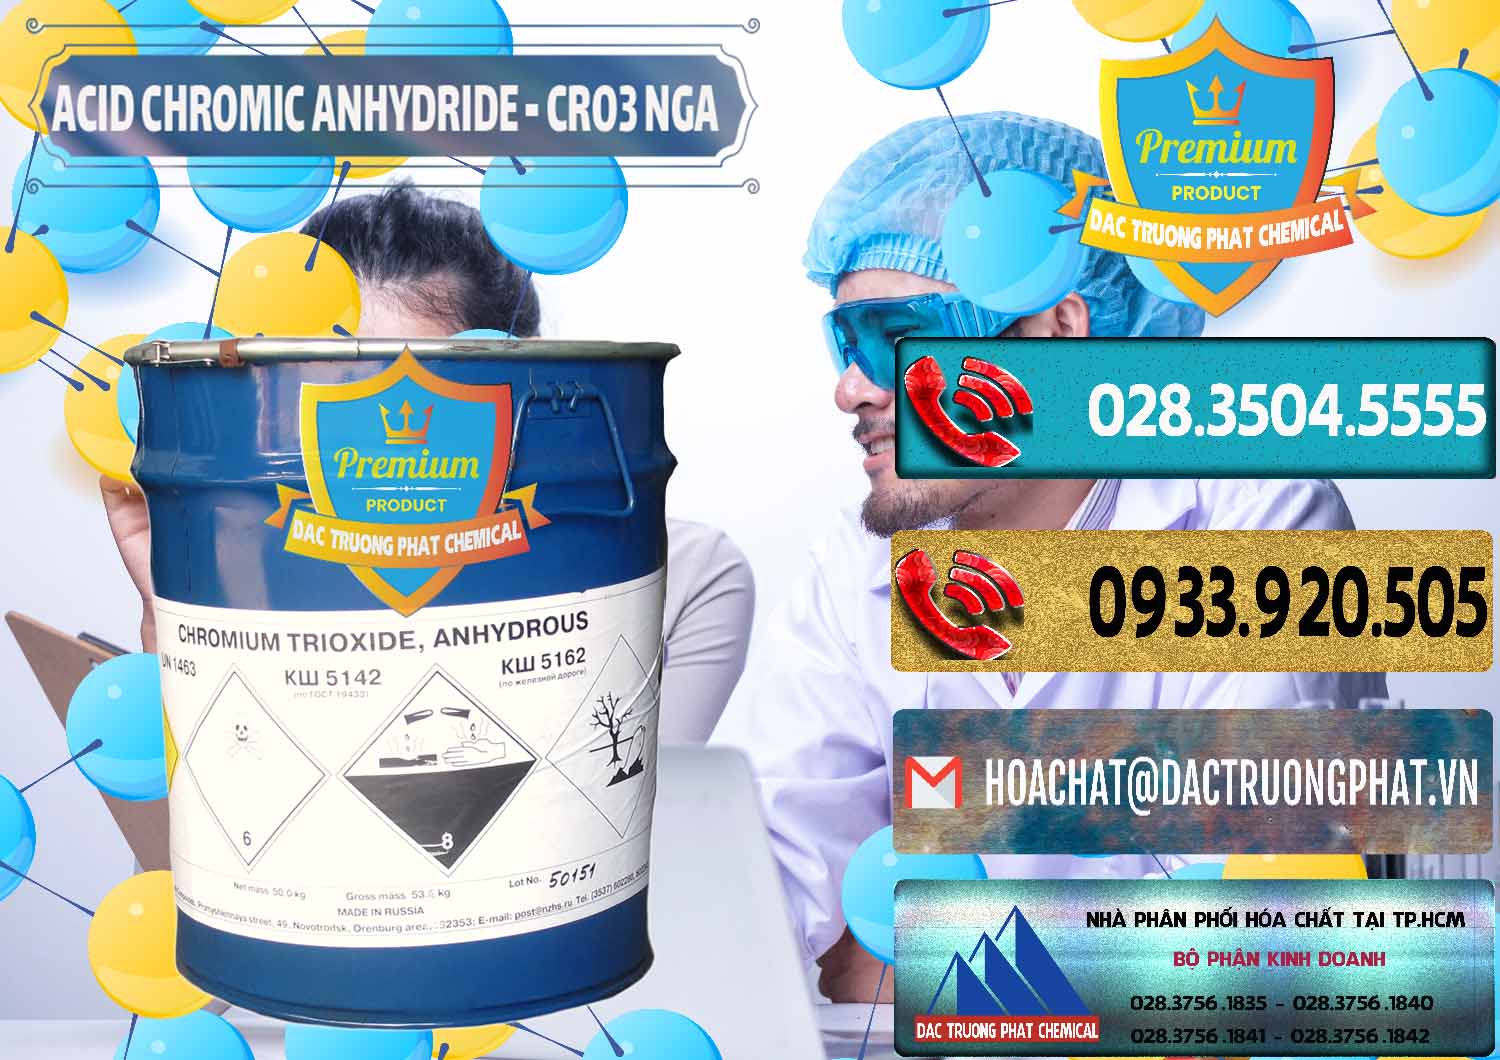 Đơn vị bán ( phân phối ) Acid Chromic Anhydride - Cromic CRO3 Nga Russia - 0006 - Công ty chuyên bán & cung cấp hóa chất tại TP.HCM - hoachatdetnhuom.com